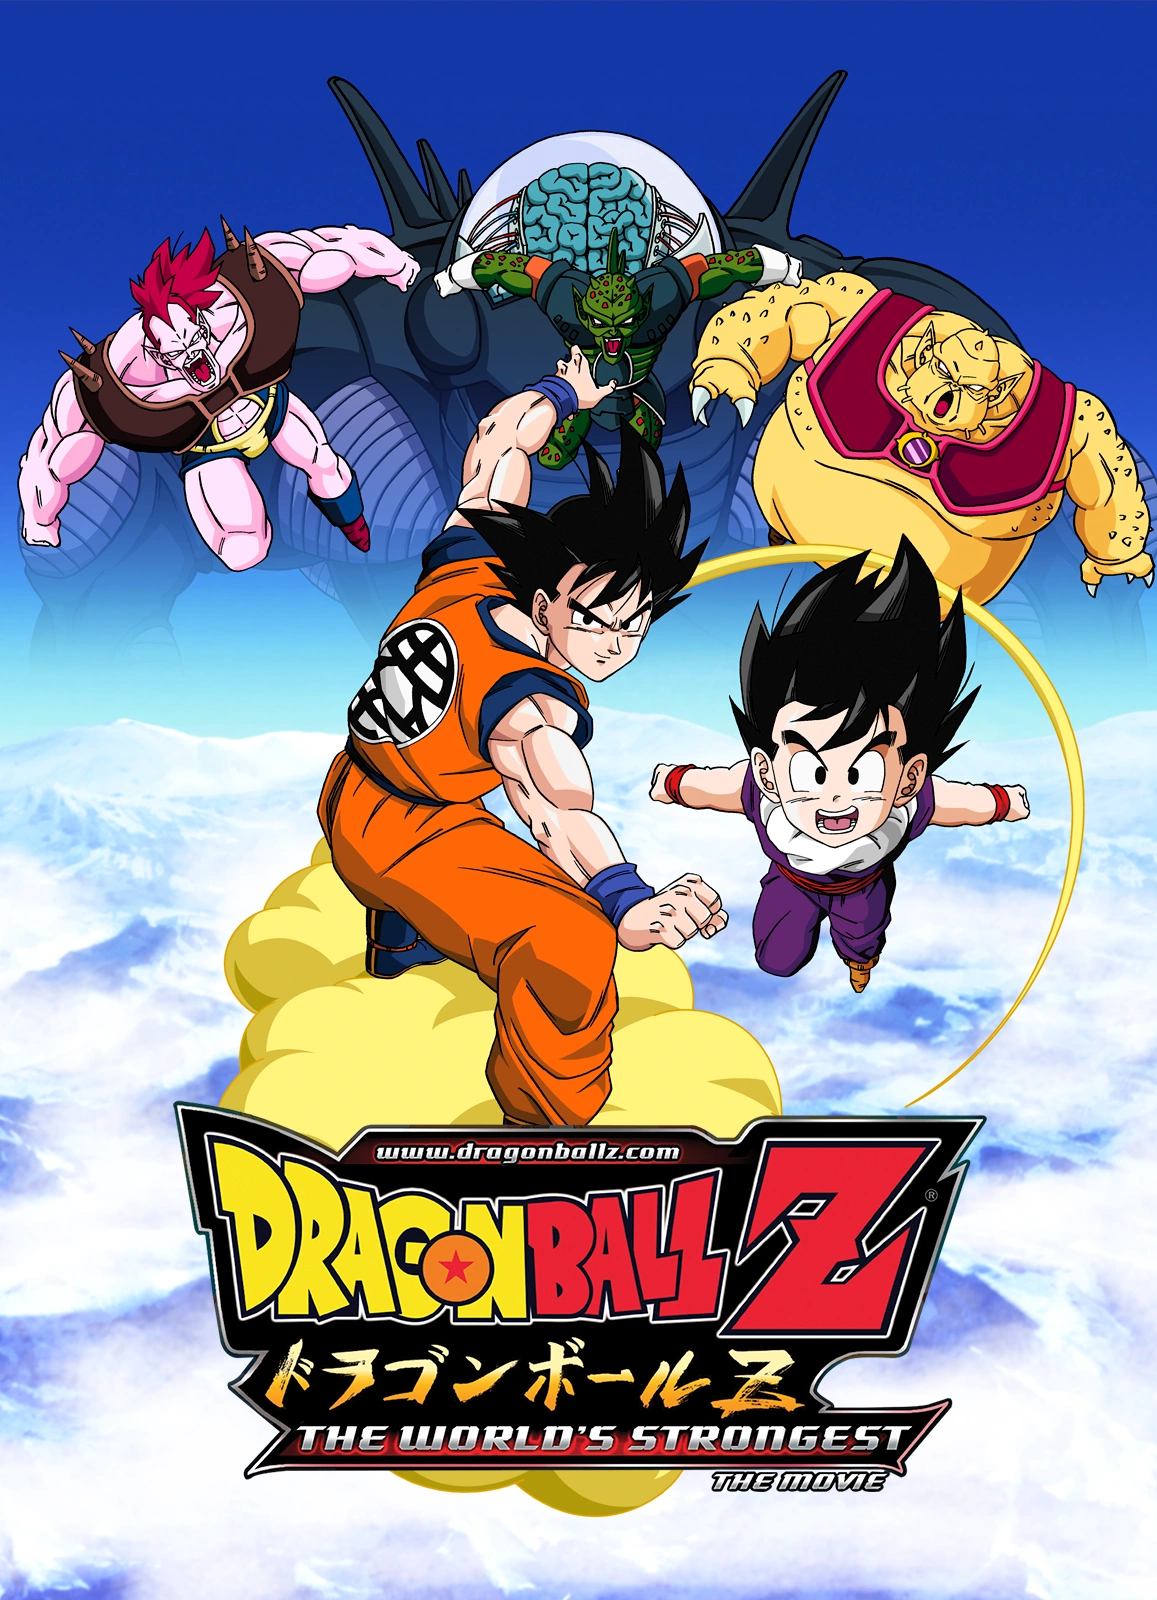 4ª e 5ª temporada de Dragon Ball Z chegam à Crunchyroll pelas